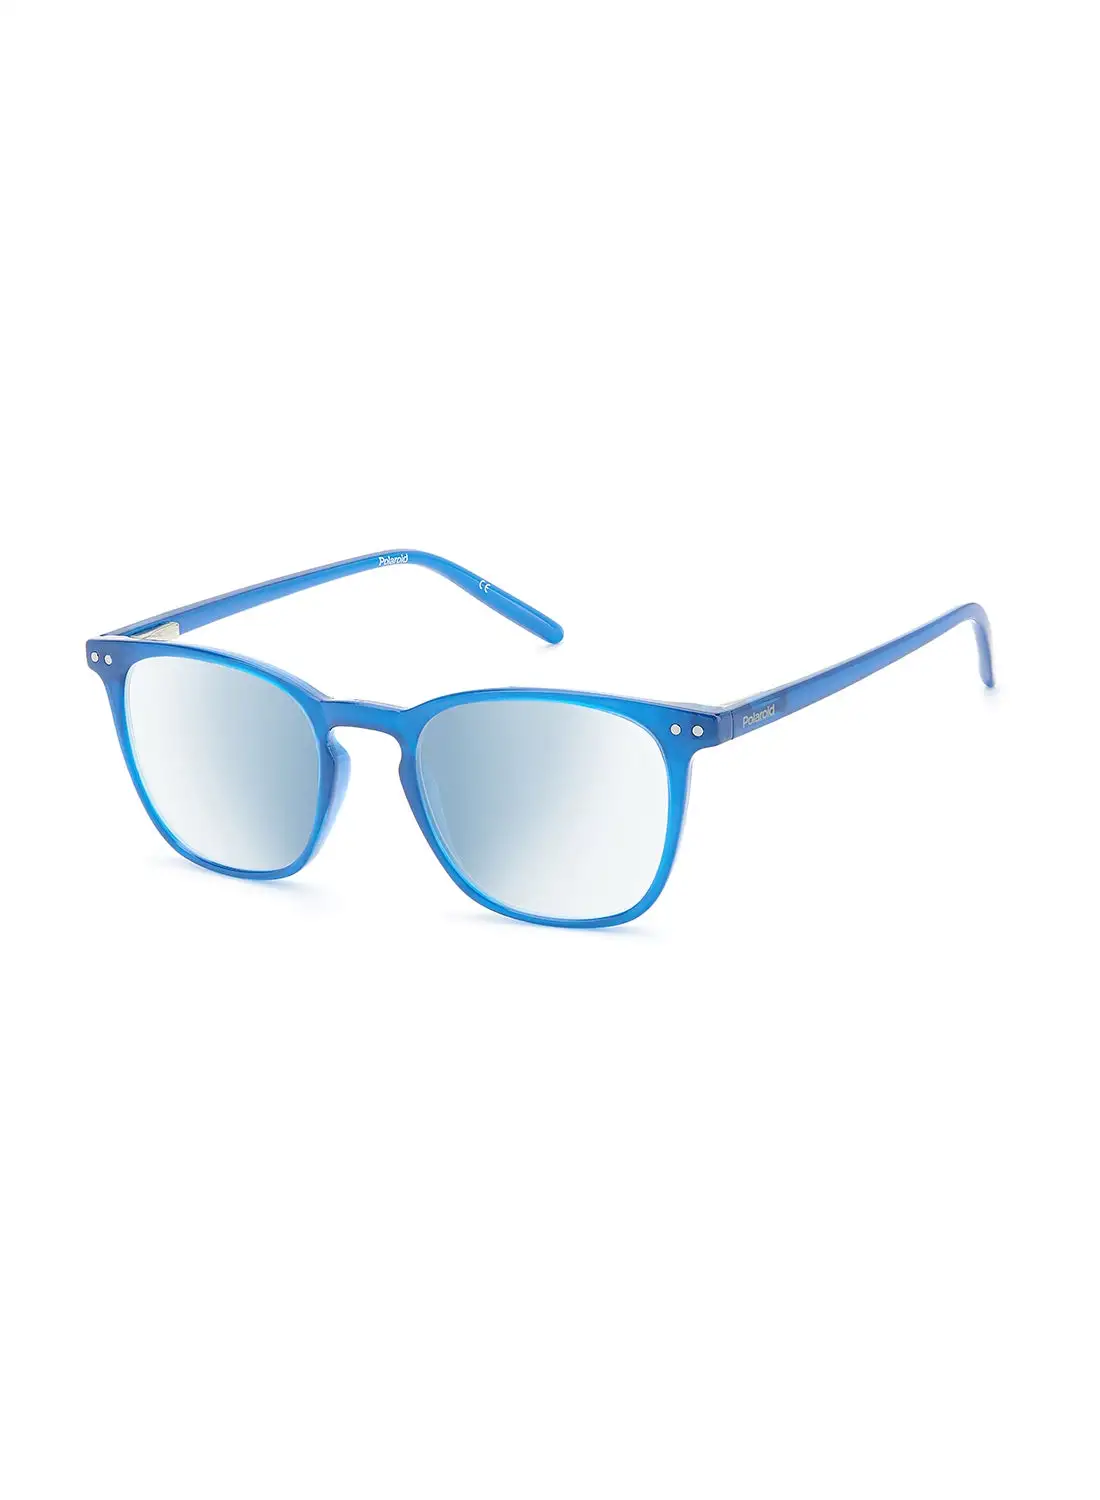 نظارات القراءة بولارويد للجنسين - Pld 0029/R/Bb Blue Azure 50 - مقاس العدسة: 50 ملم